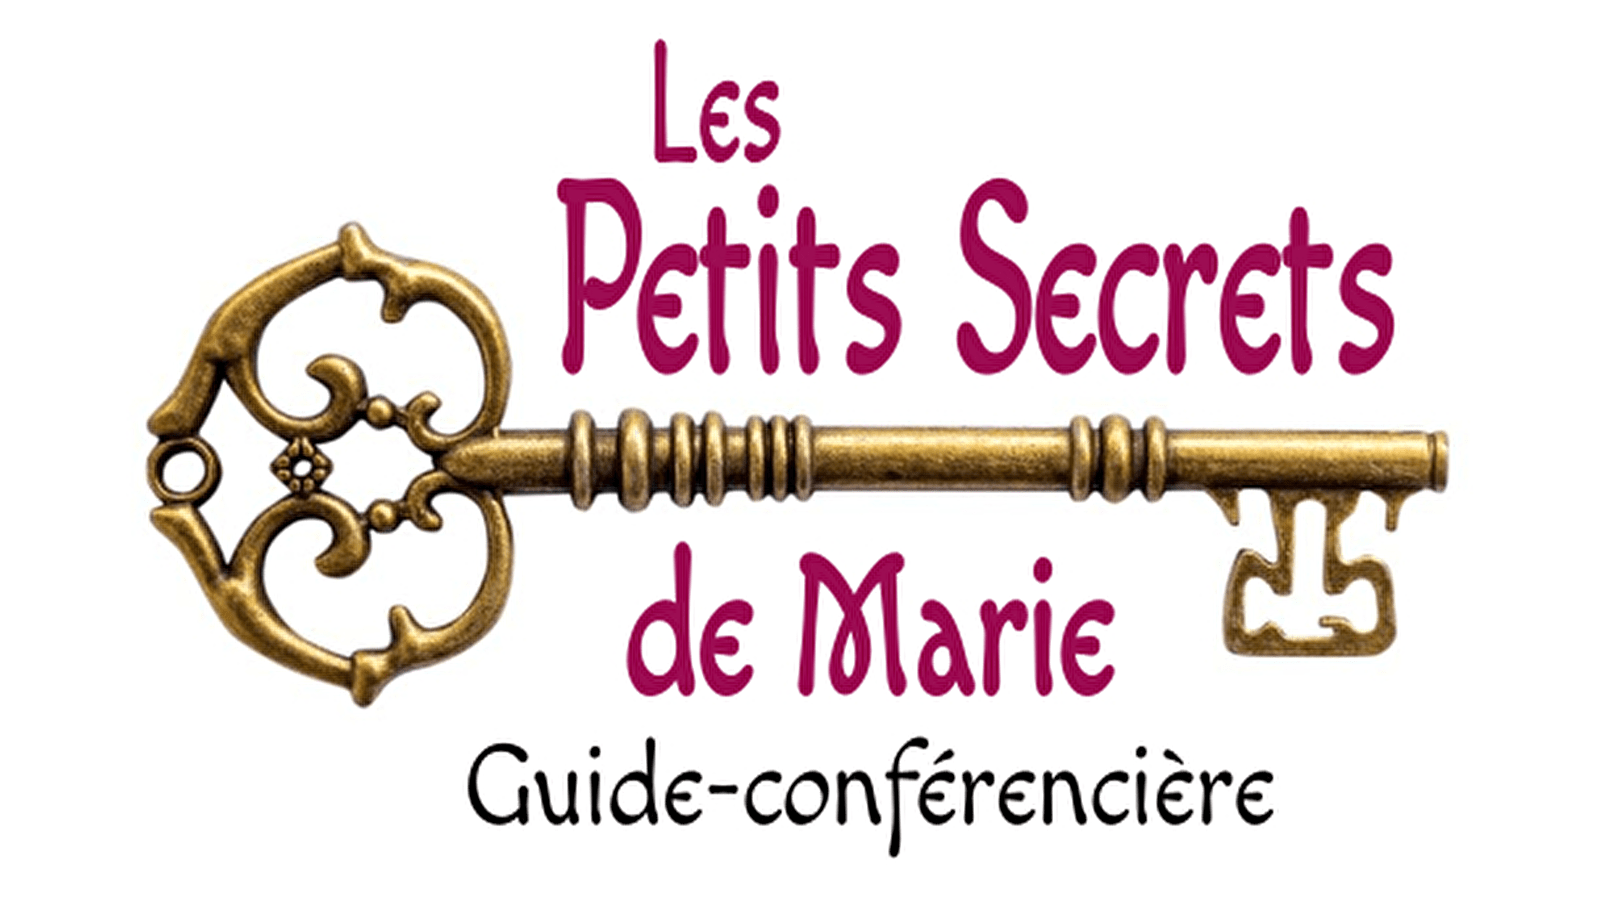 Les Petits Secrets de Marie